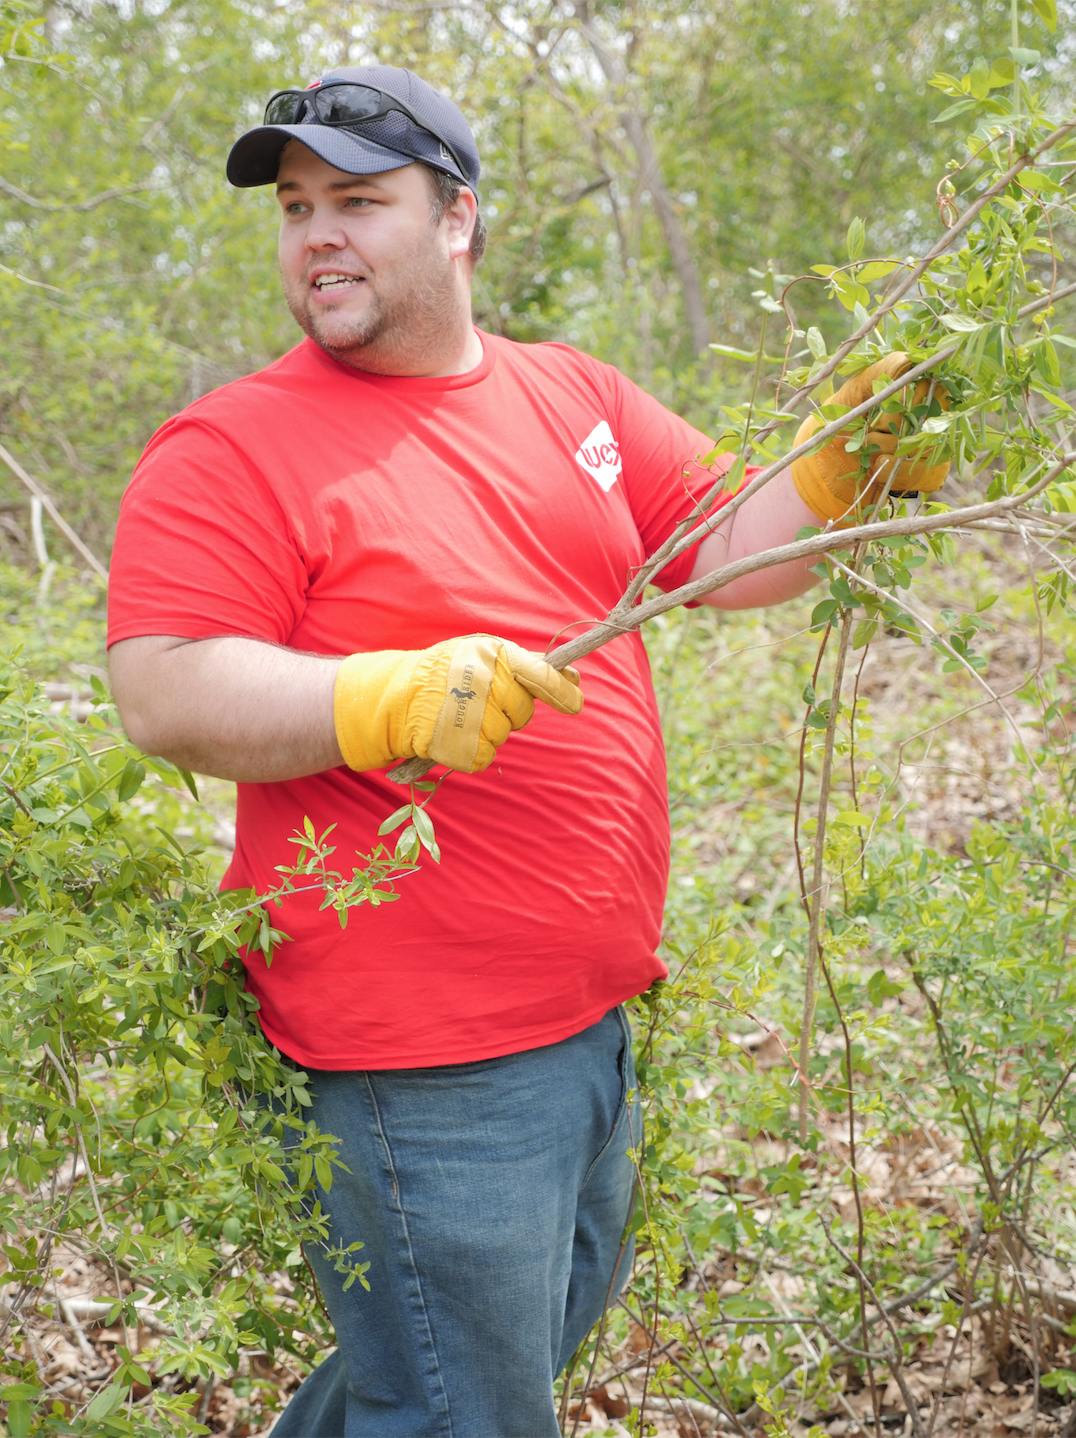 WEX employees volunteering in the woods